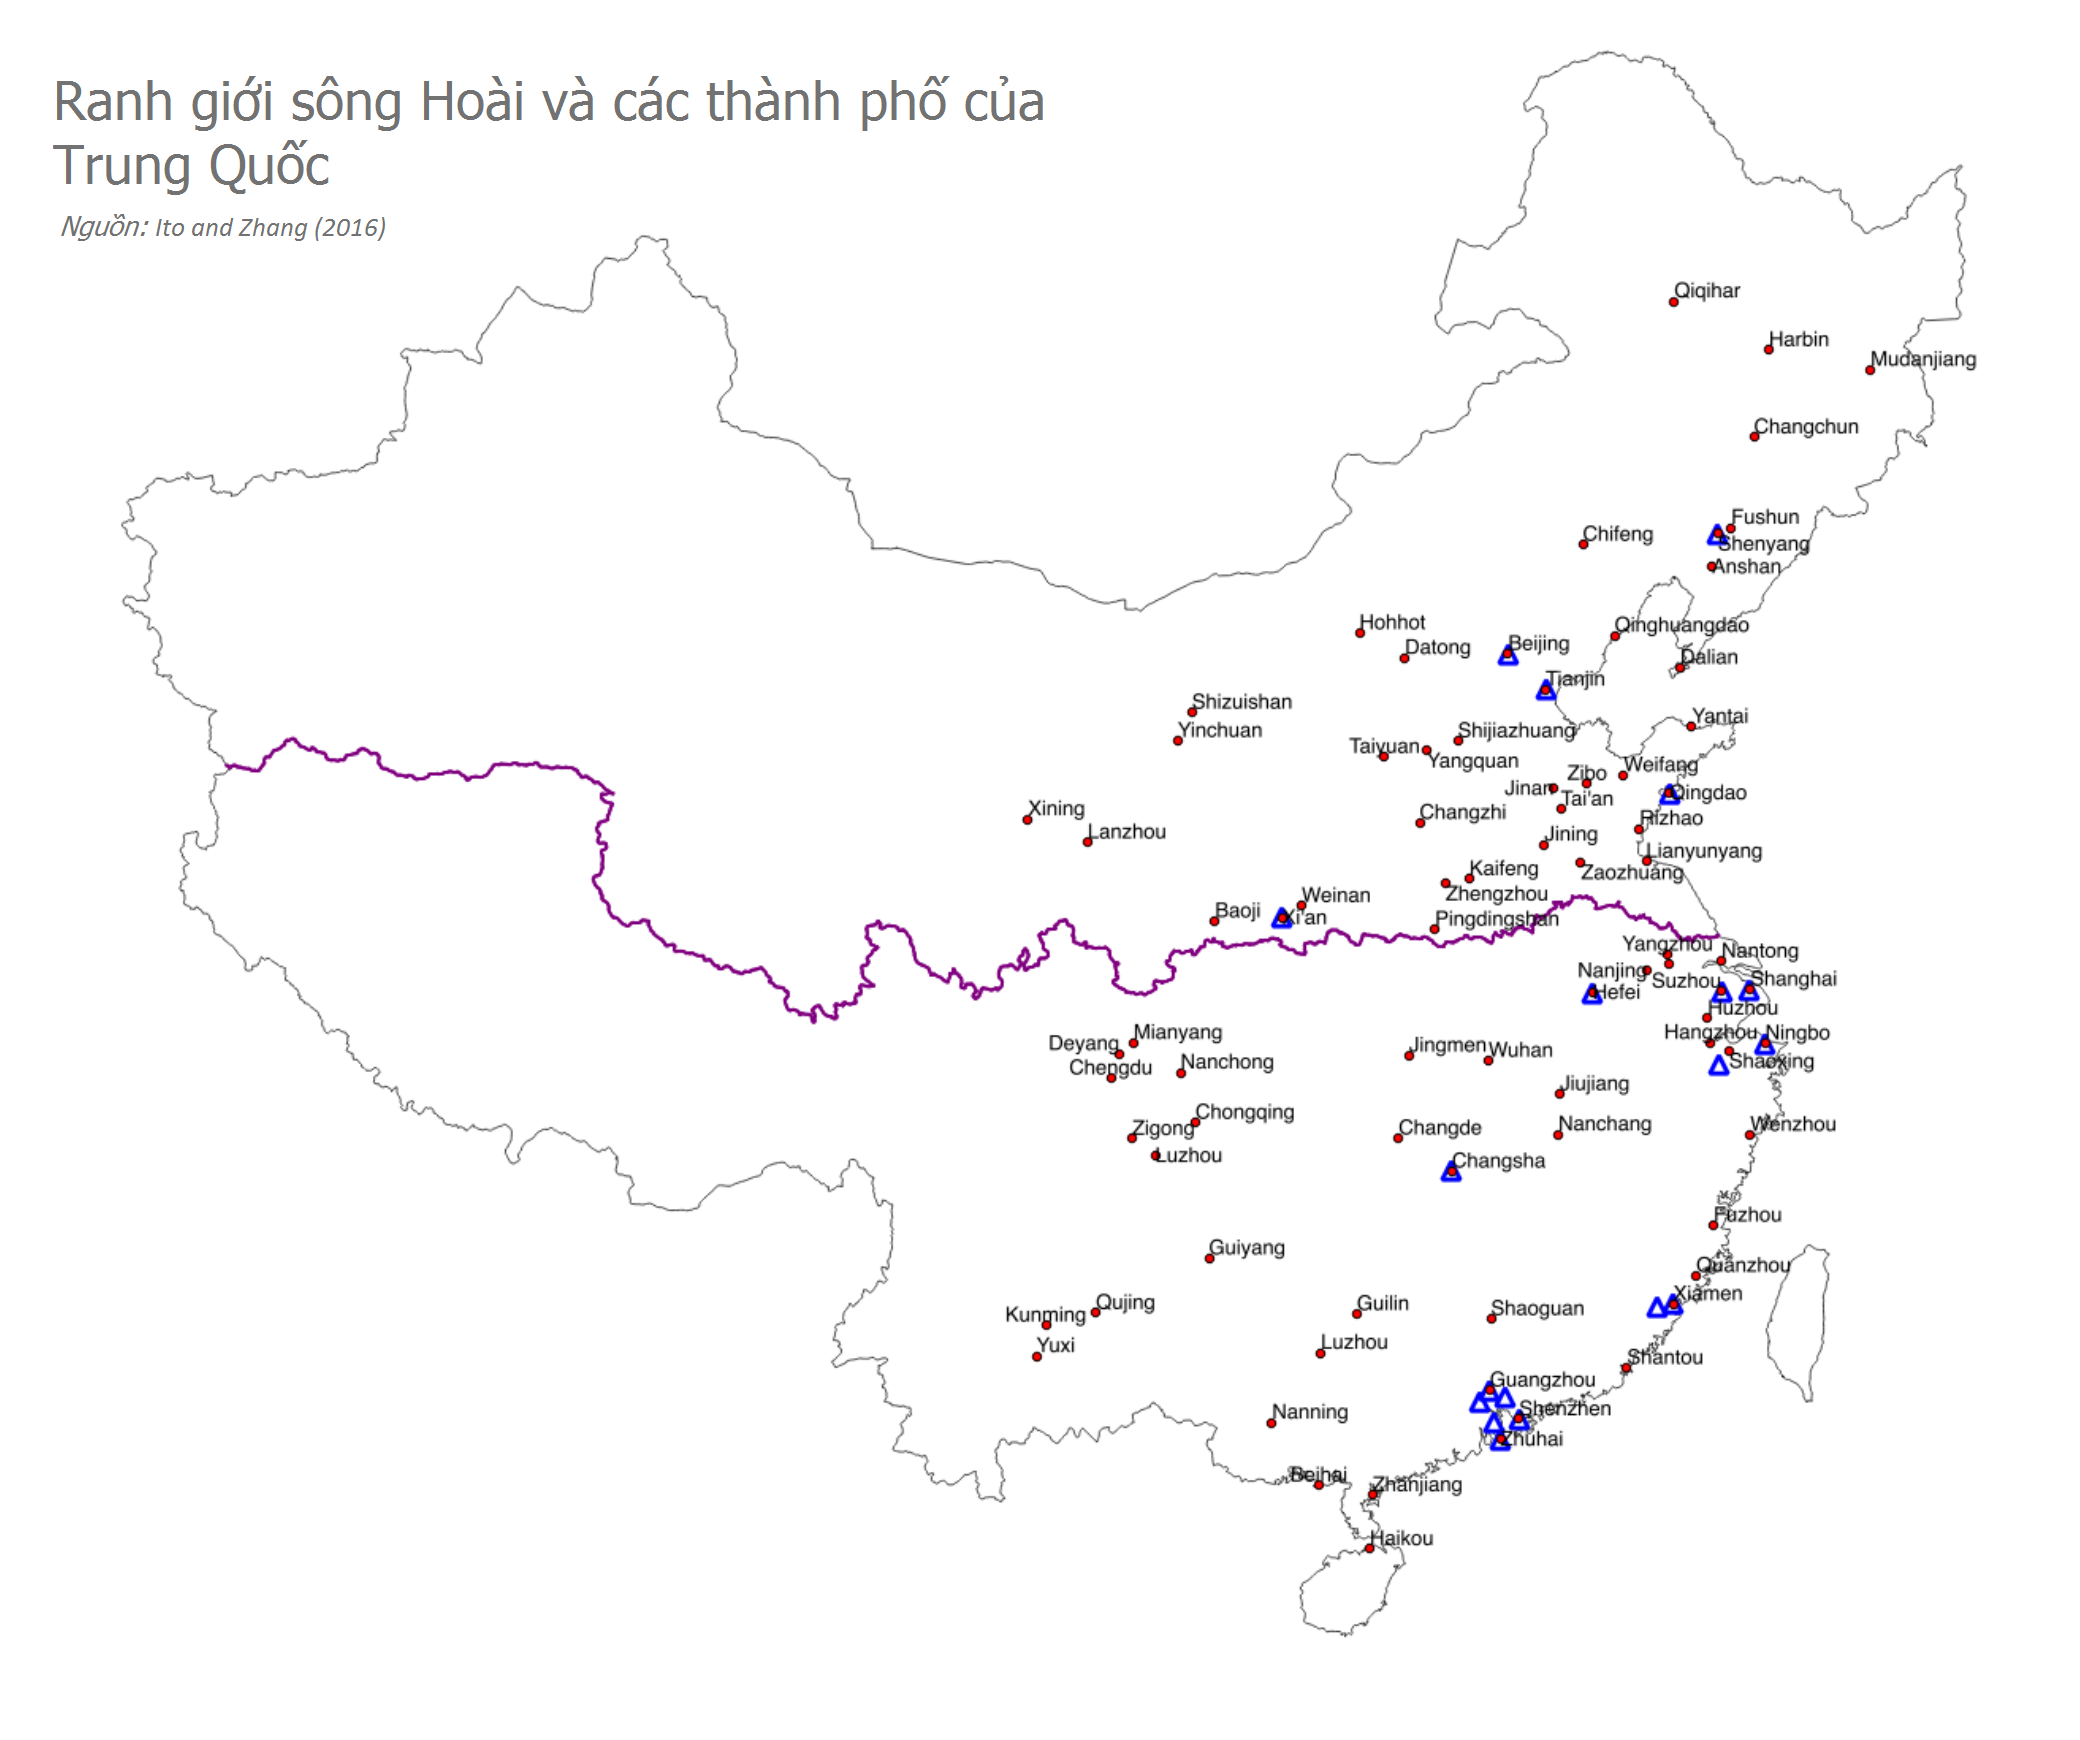 Bản đồ các thành phố ở phía Nam và phía Bắc sông Hoài (Trung Quốc). Đường màu tím giữa bản đồ biểu thị ranh giới sông Hoài-núi Tần Lĩnh. Mỗi chấm tròn biểu thị một thành phố. Mỗi hình tam giác biểu thị một địa điểm đặt nhà máy hoặc cảng biển. Ảnh trích từ nghiên cứu của Ito và Zhang (2016)